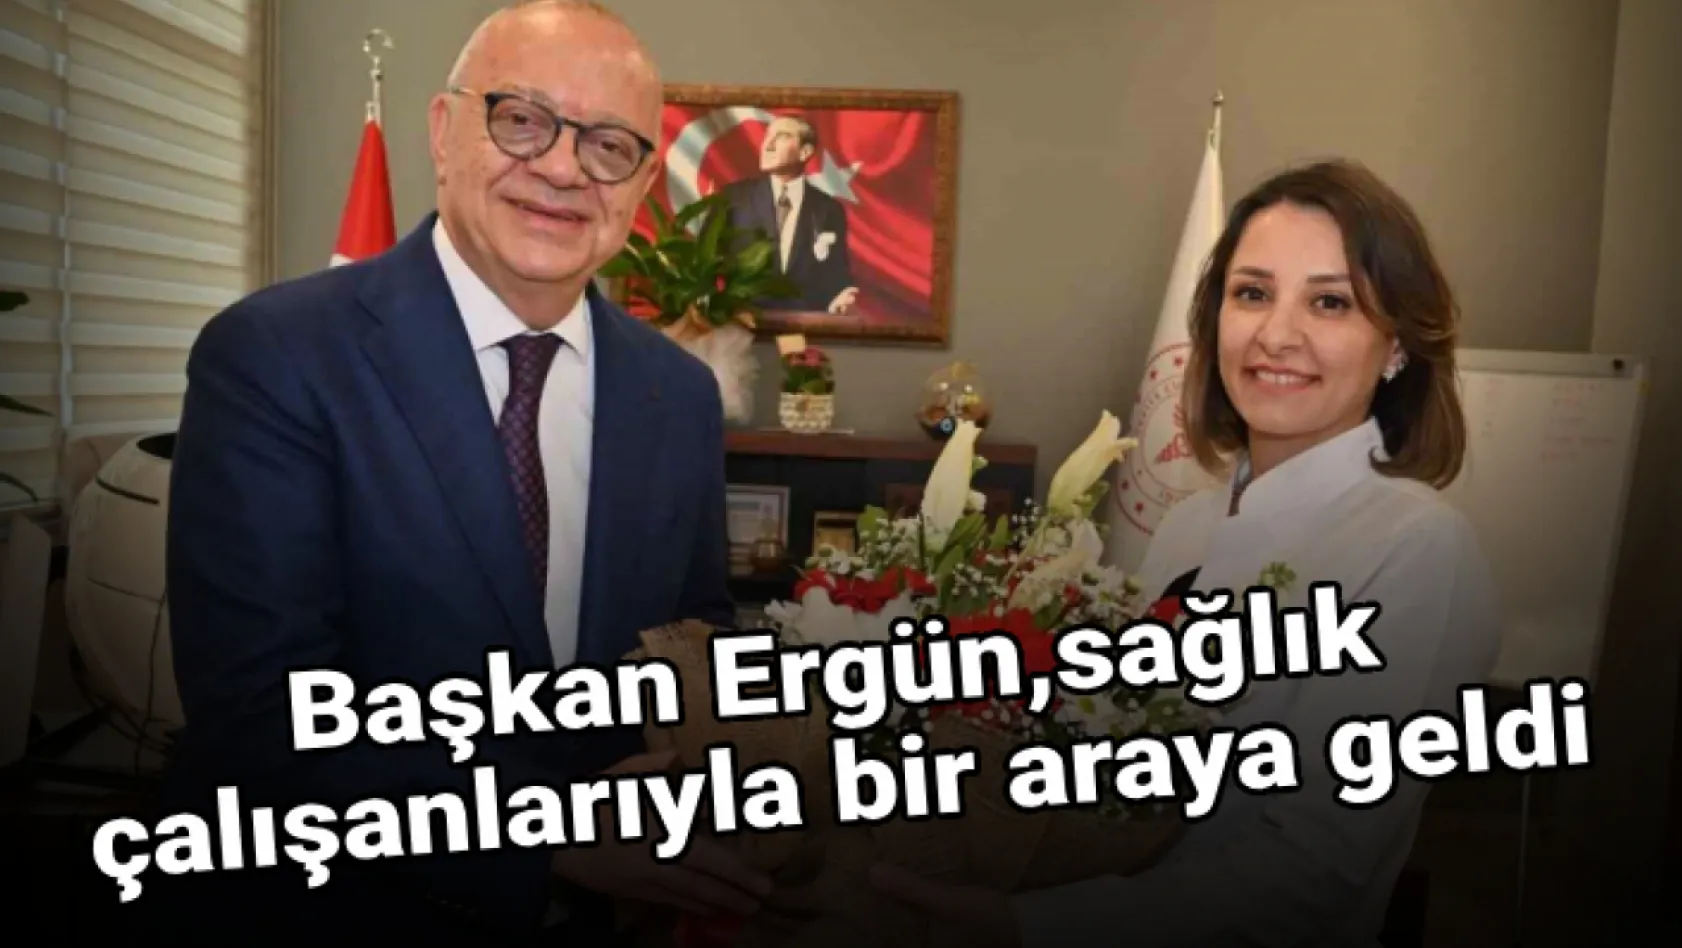 Başkan Ergün, sağlık çalışanlarıyla bir araya geldi